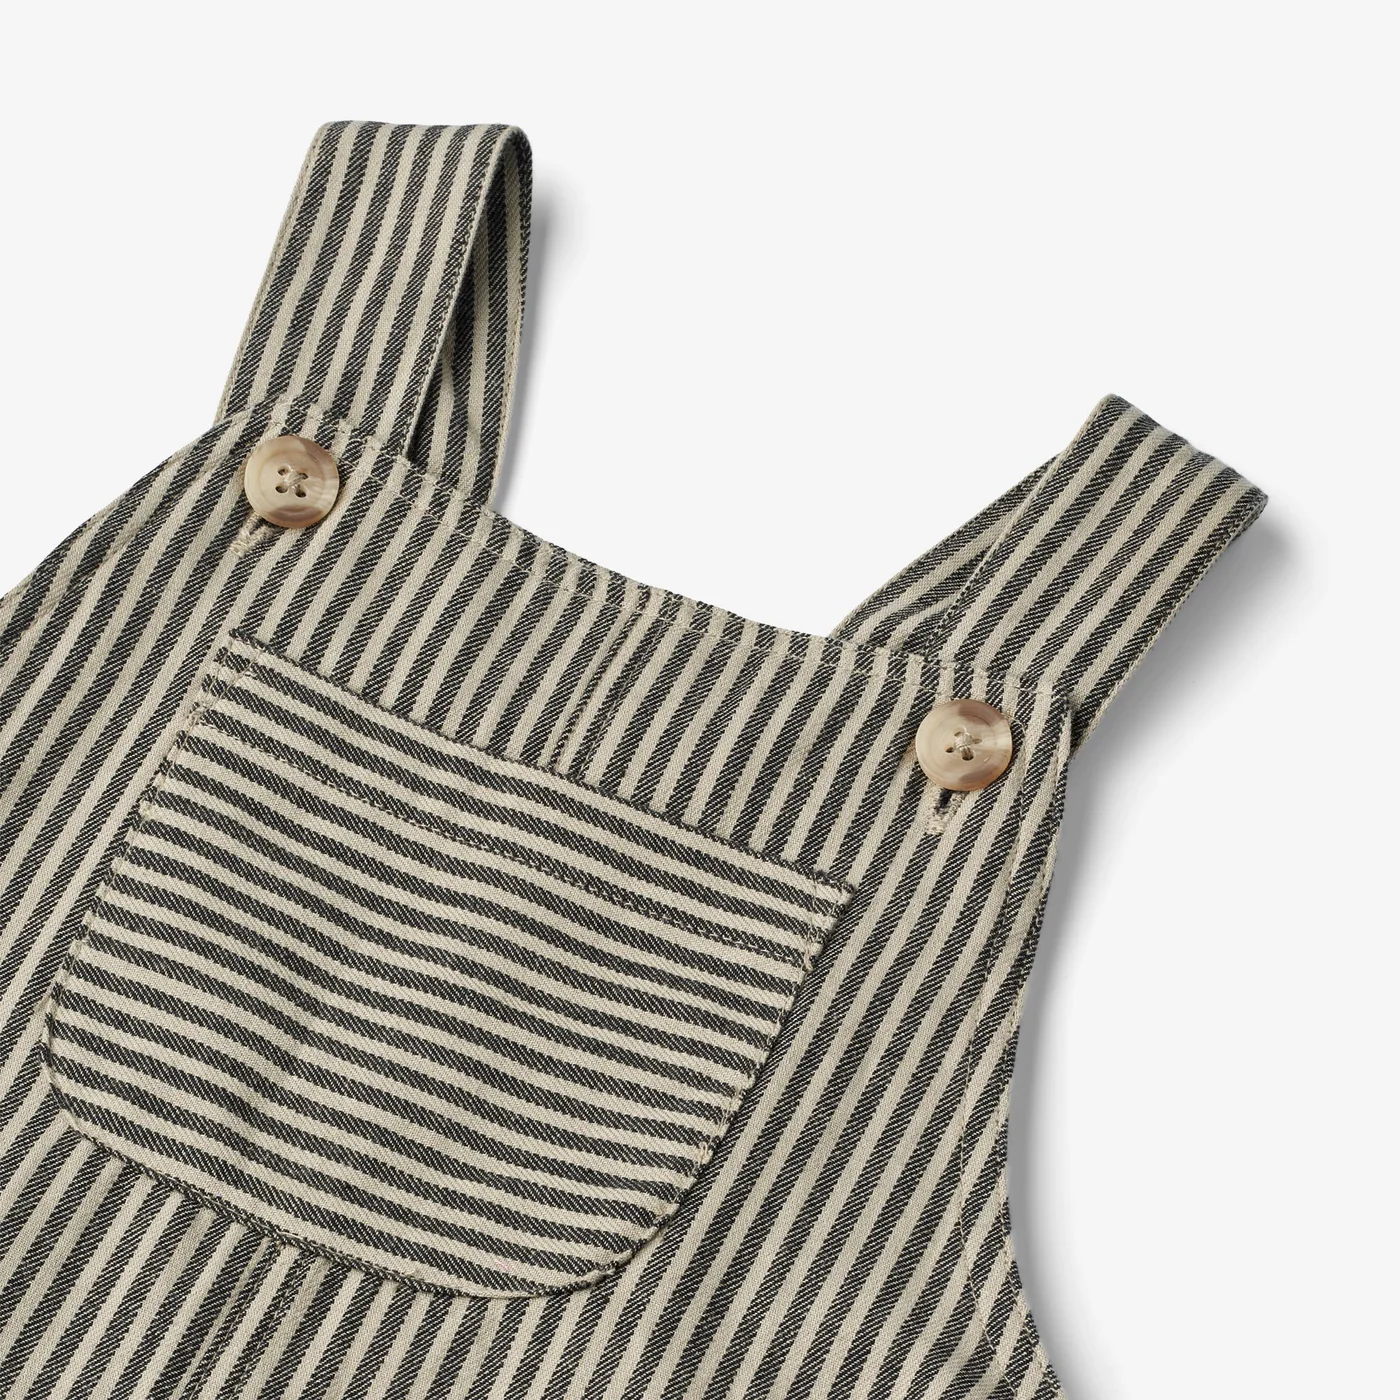 Produktbild: wheat - Latzhose Issey - black coal stripe von wheat im Onlineshop von dasMikruli - Dein Shop für Baby Erstausstattung